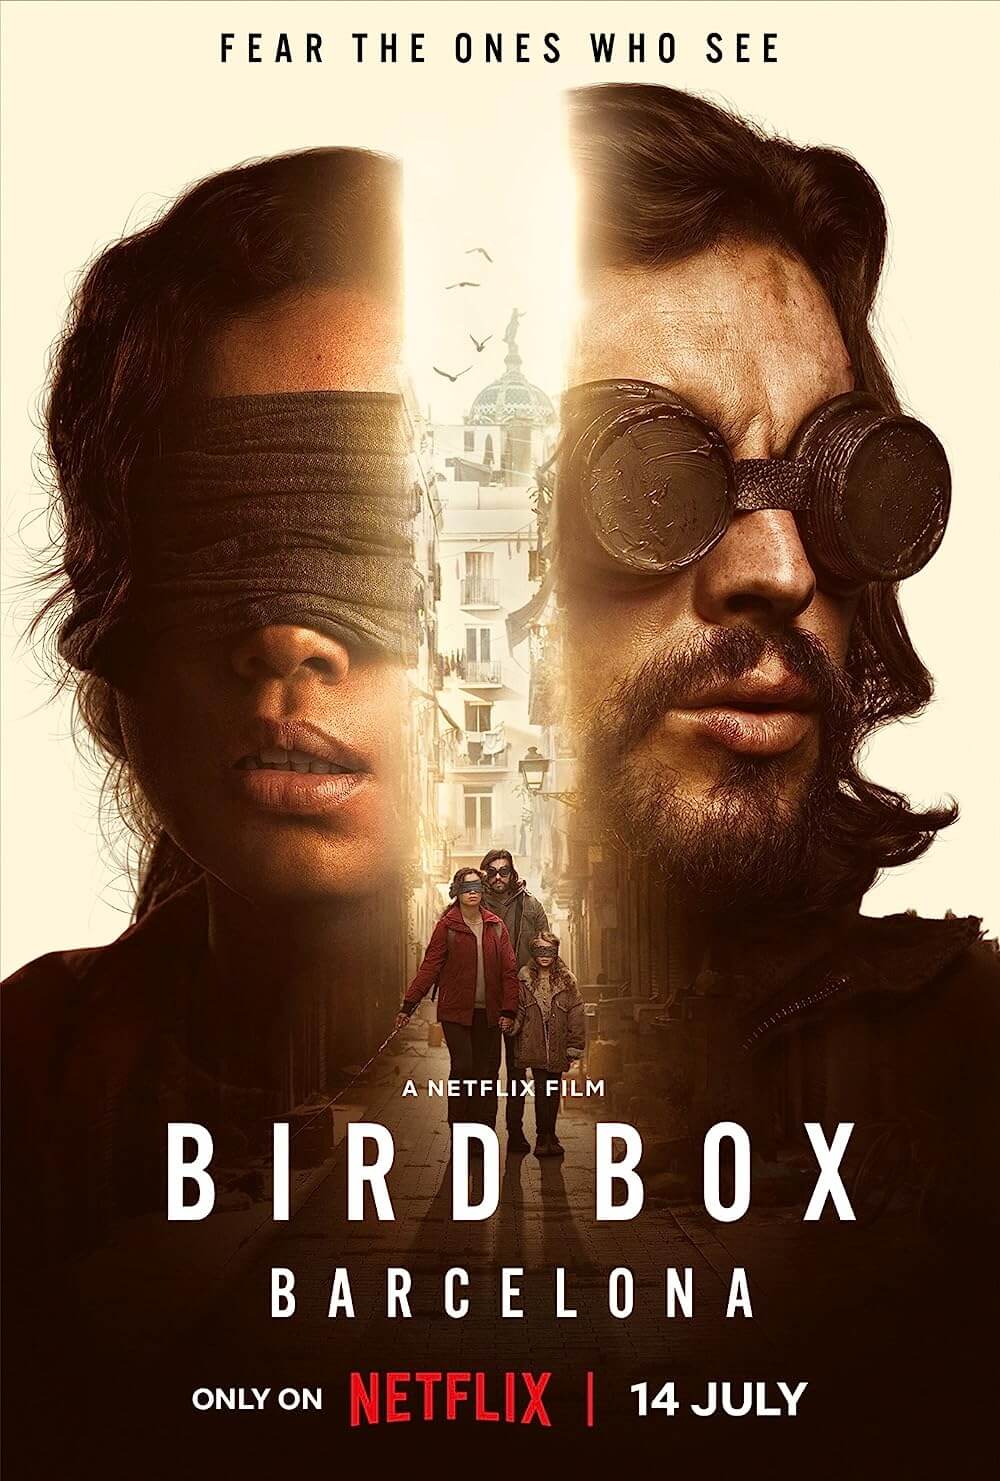 ดูหนังออนไลน์ฟรี Bird Box Barcelona (2023) มอง อย่าให้เห็น (บาร์เซโลนา)